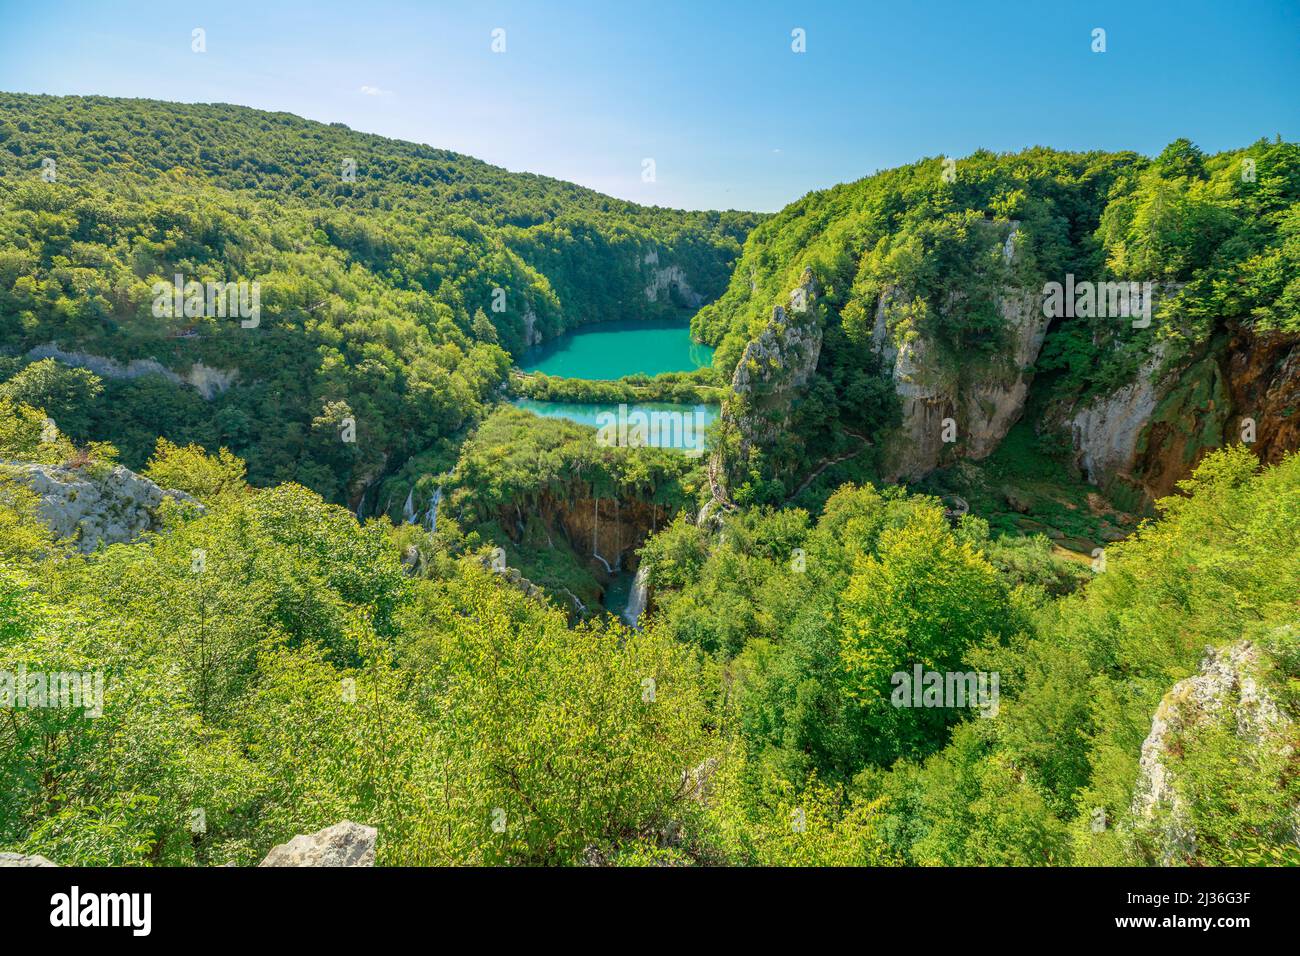 Le lac Korana et le lac Novakovica Brod donnent sur le parc national des lacs Plitvice de Croatie. Parc naturel de la forêt avec des lacs et des cascades à Lika Banque D'Images